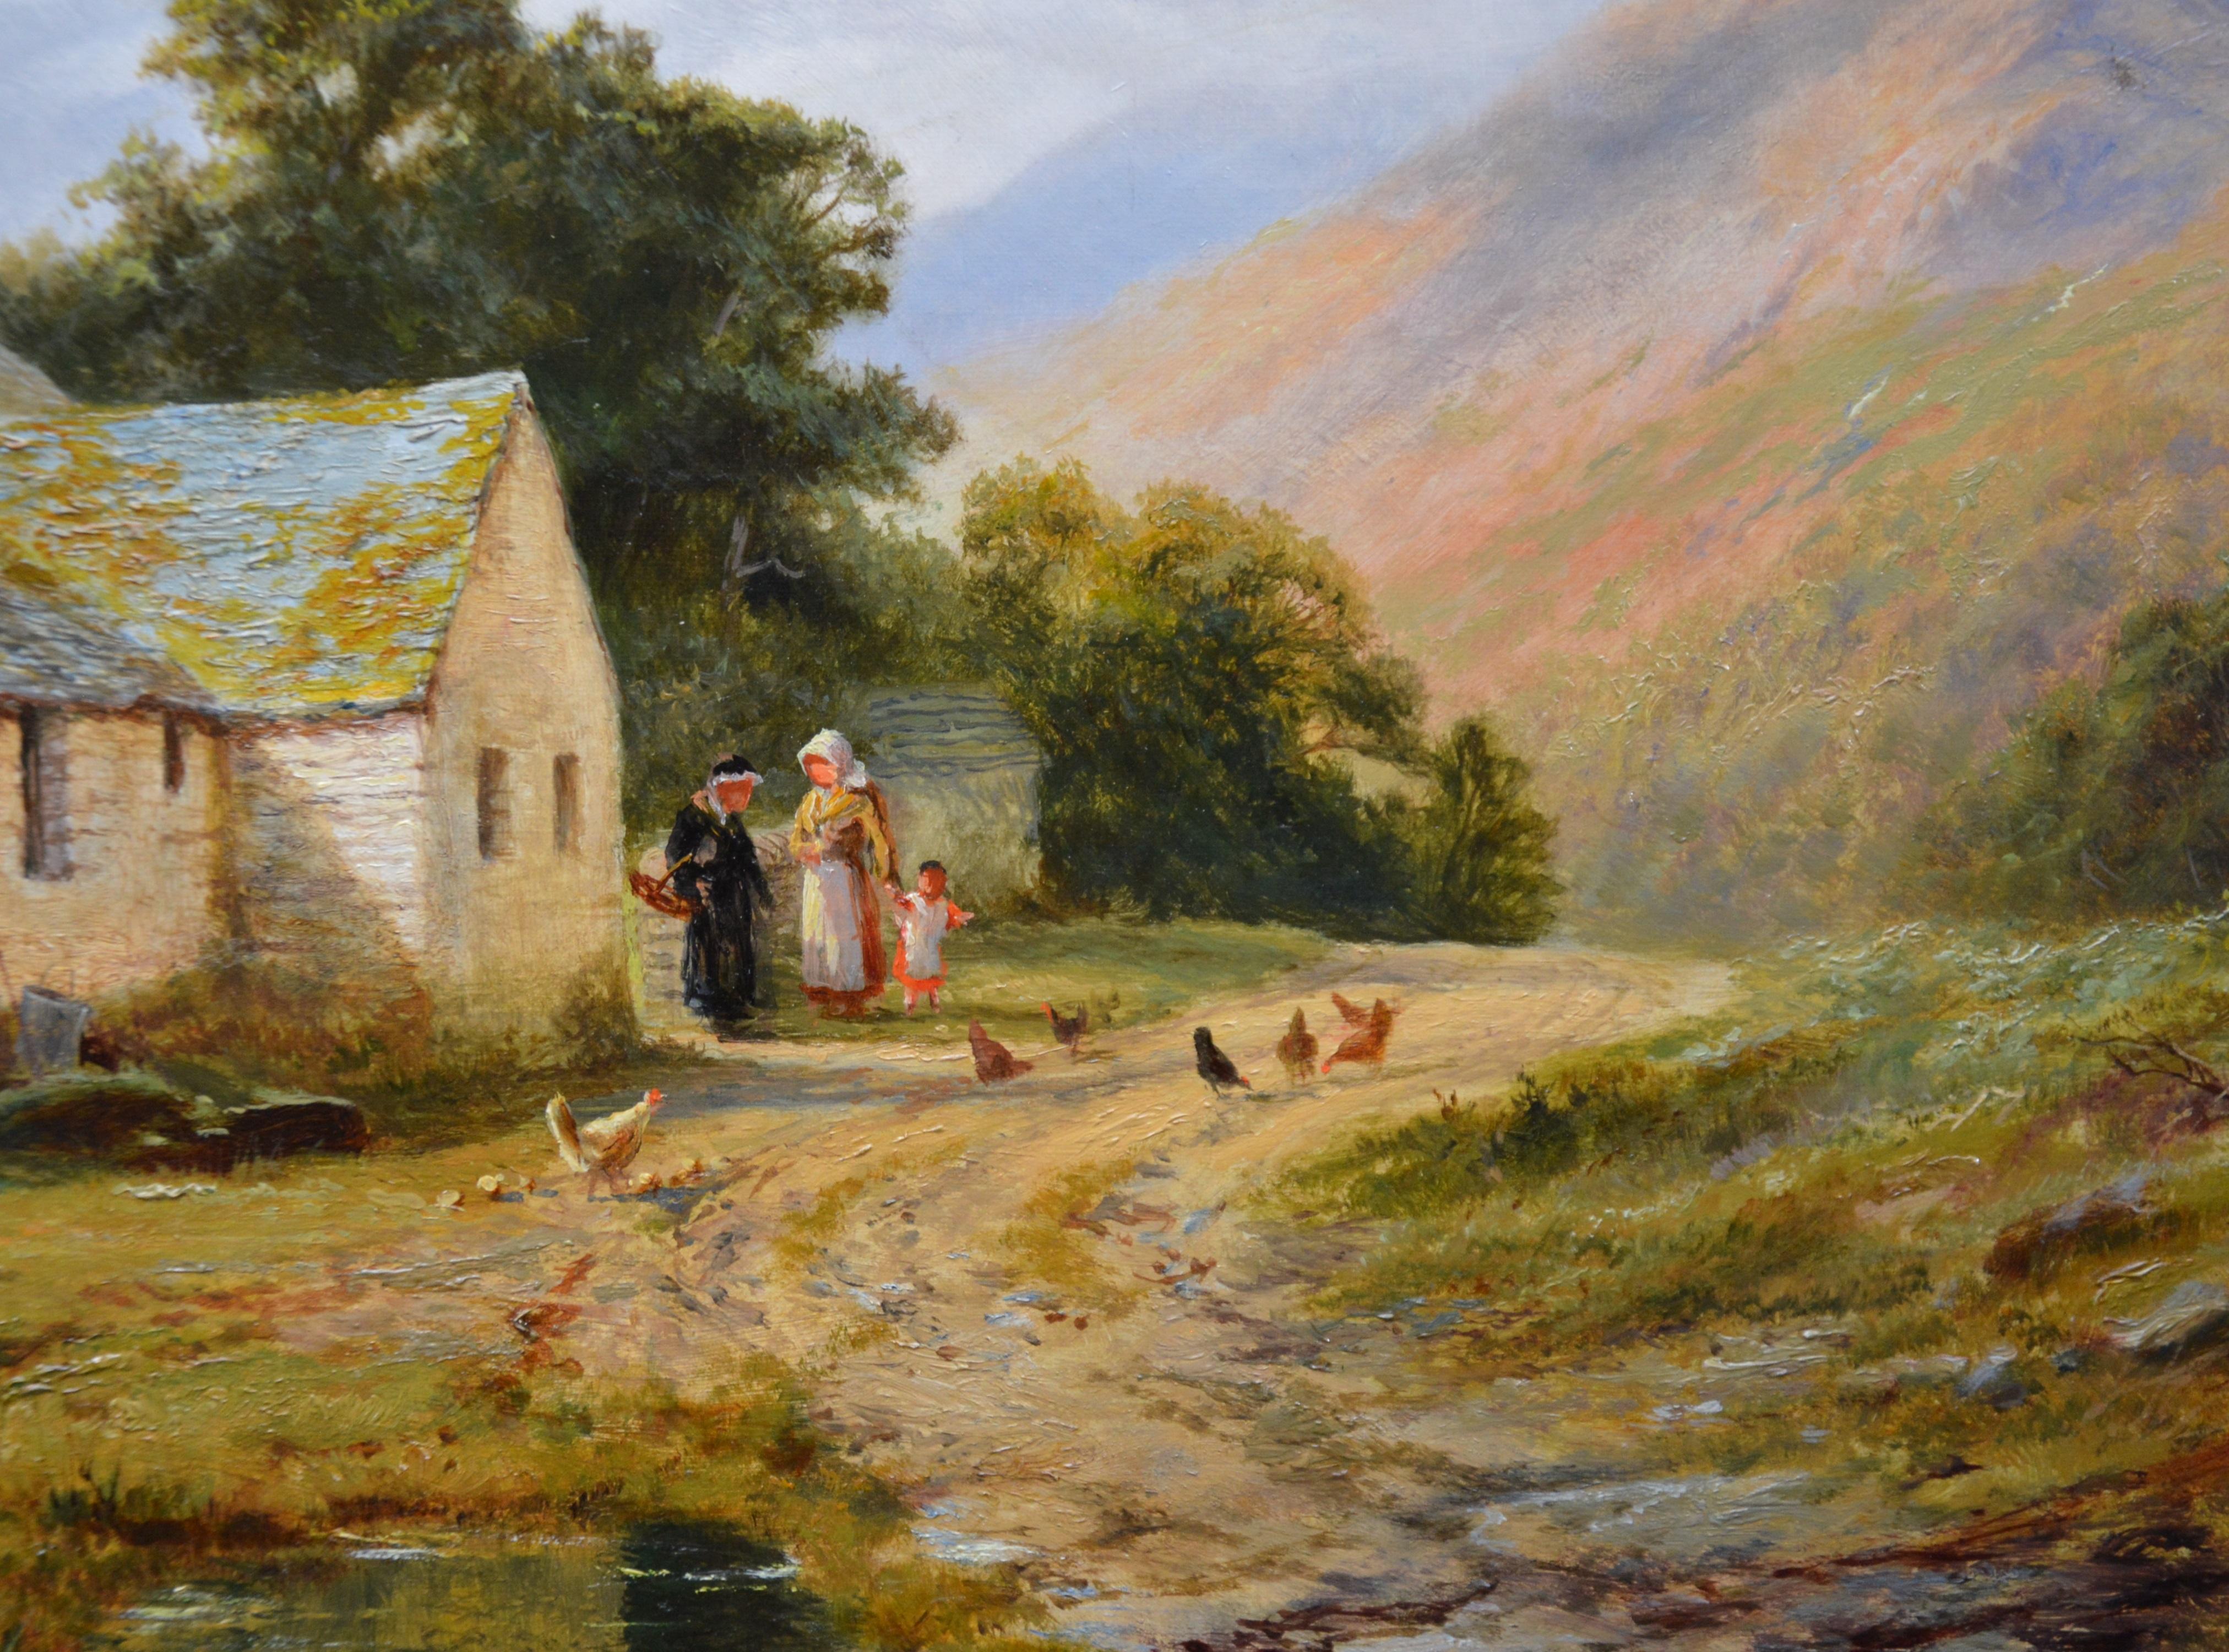 La vallée du Lledr - Paysage d'été du 19e siècle - Peinture à l'huile de Snowdonia, Pays de Galles 1